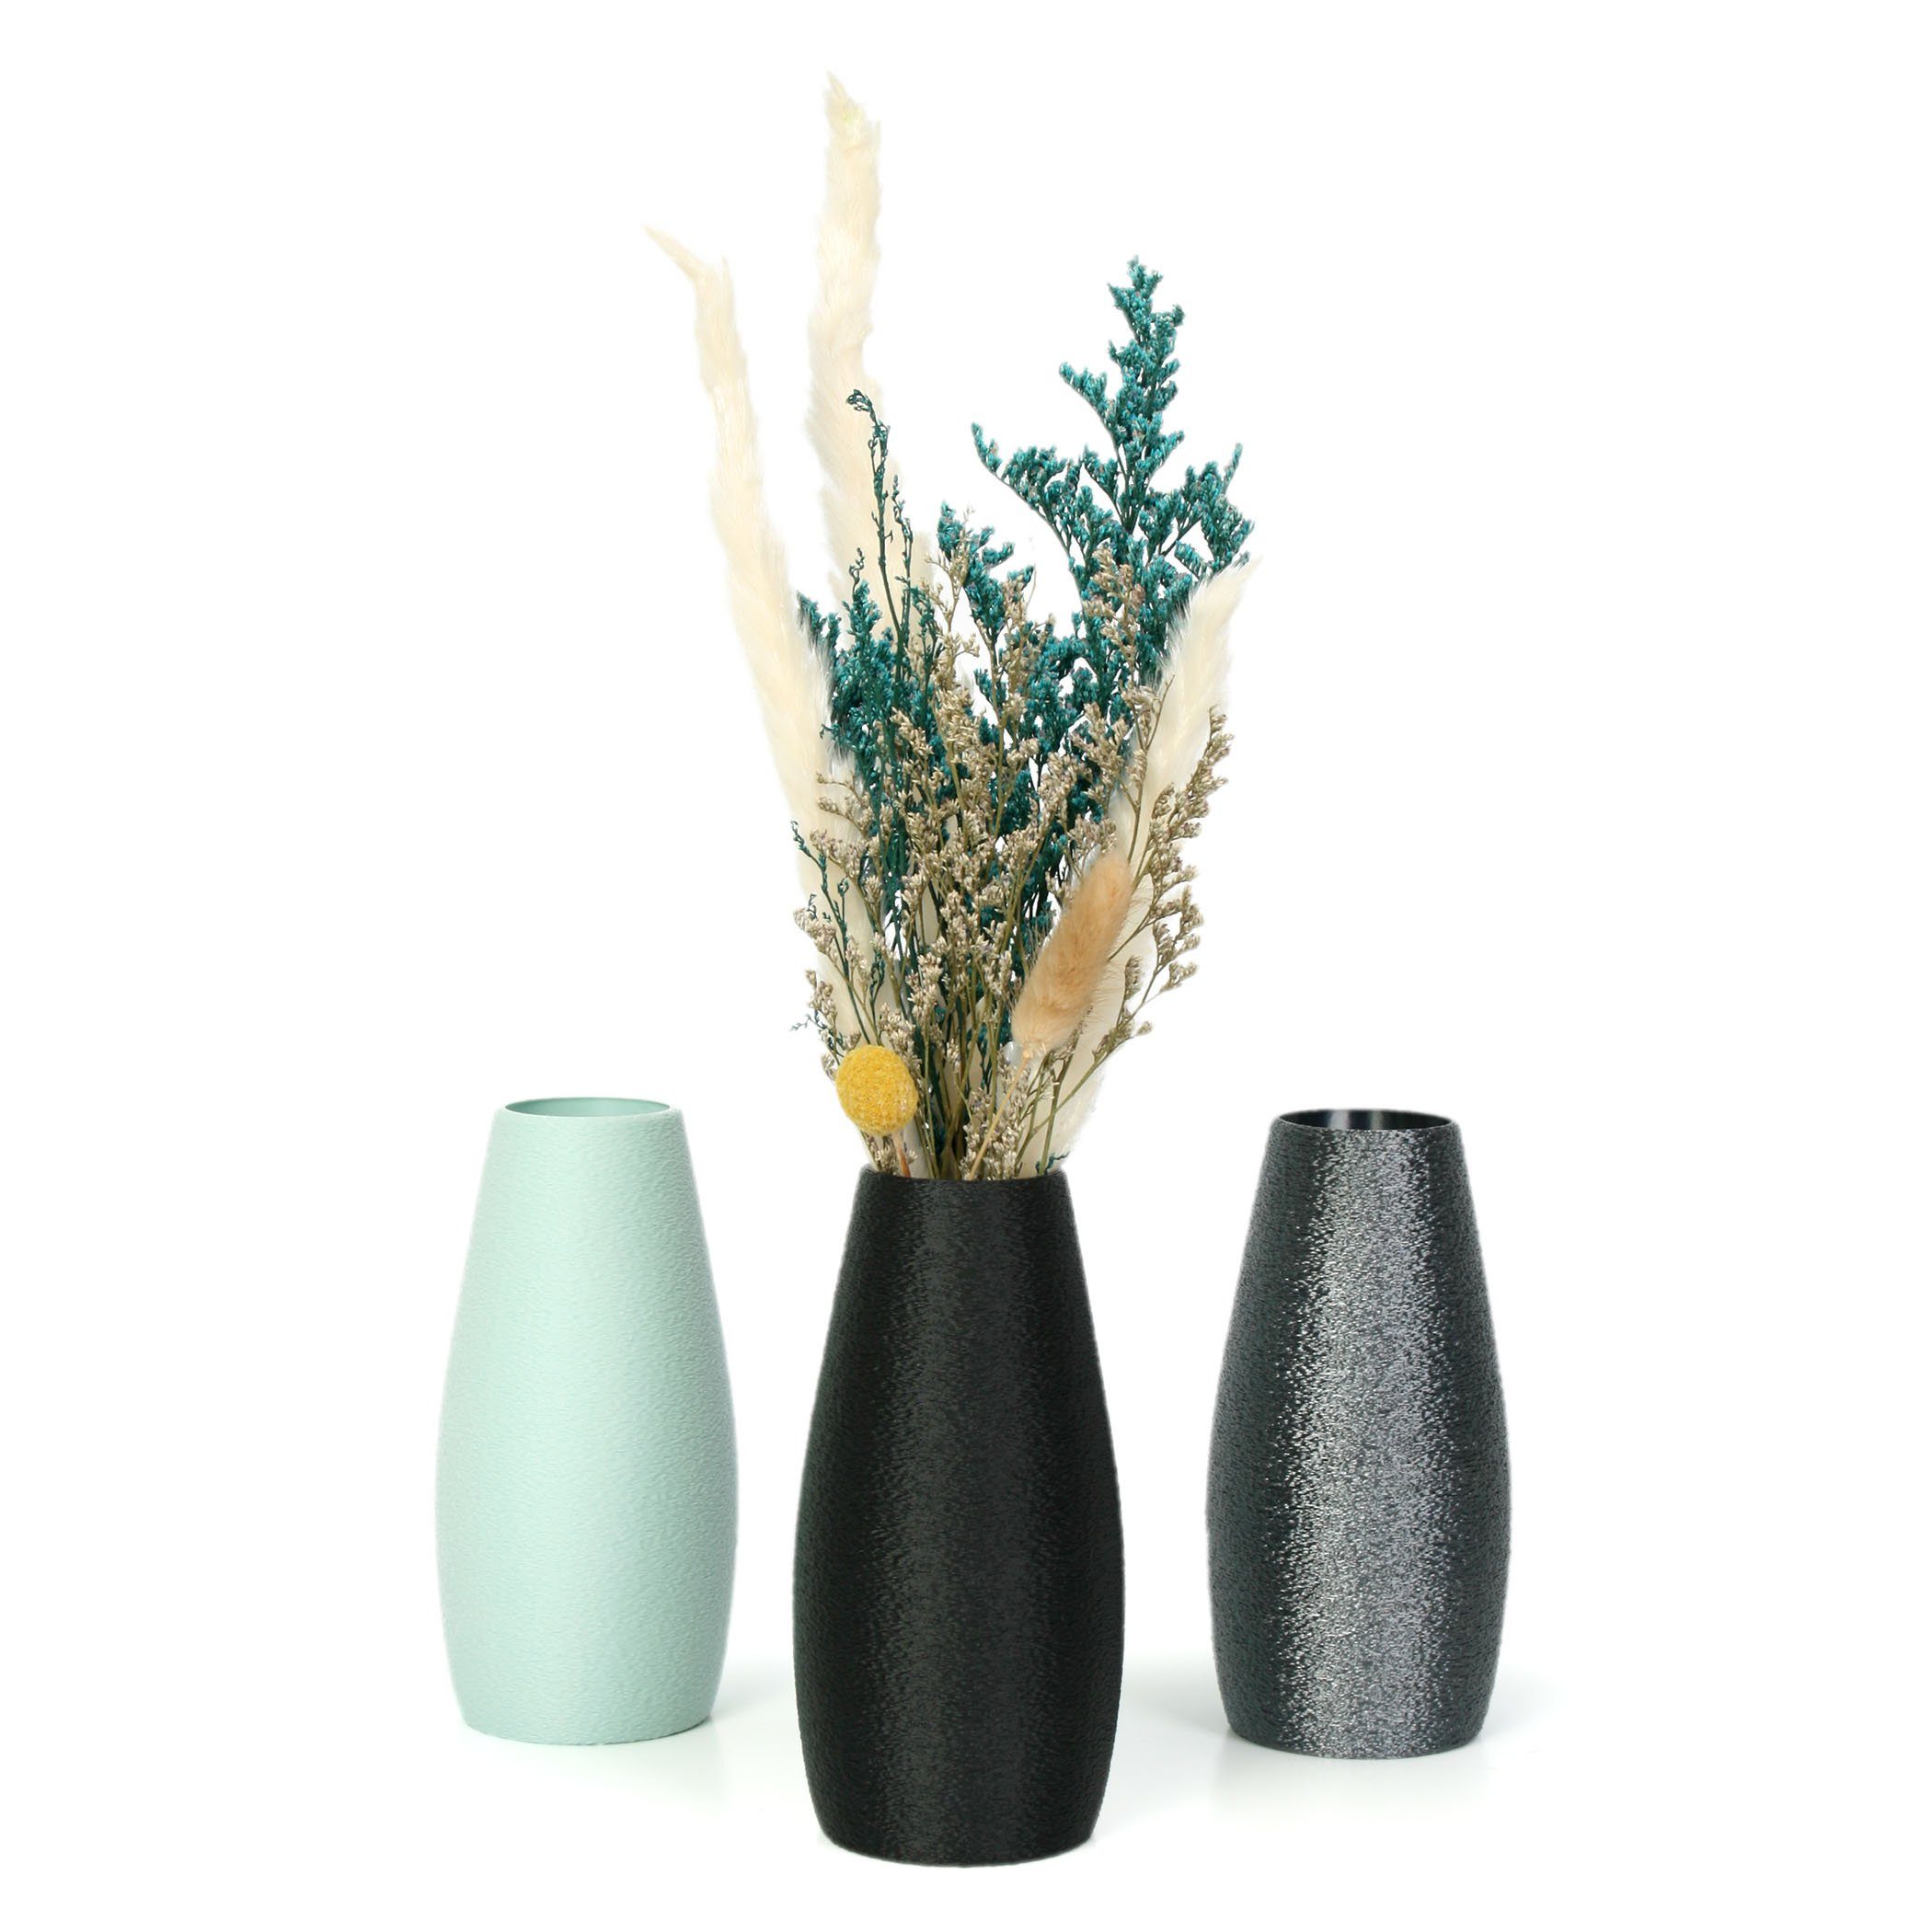 Rohstoffen; aus Water Feder – aus Dekorative nachwachsenden Green Designer wasserdicht bruchsicher Blumenvase Kreative Bio-Kunststoff, & Dekovase Vase